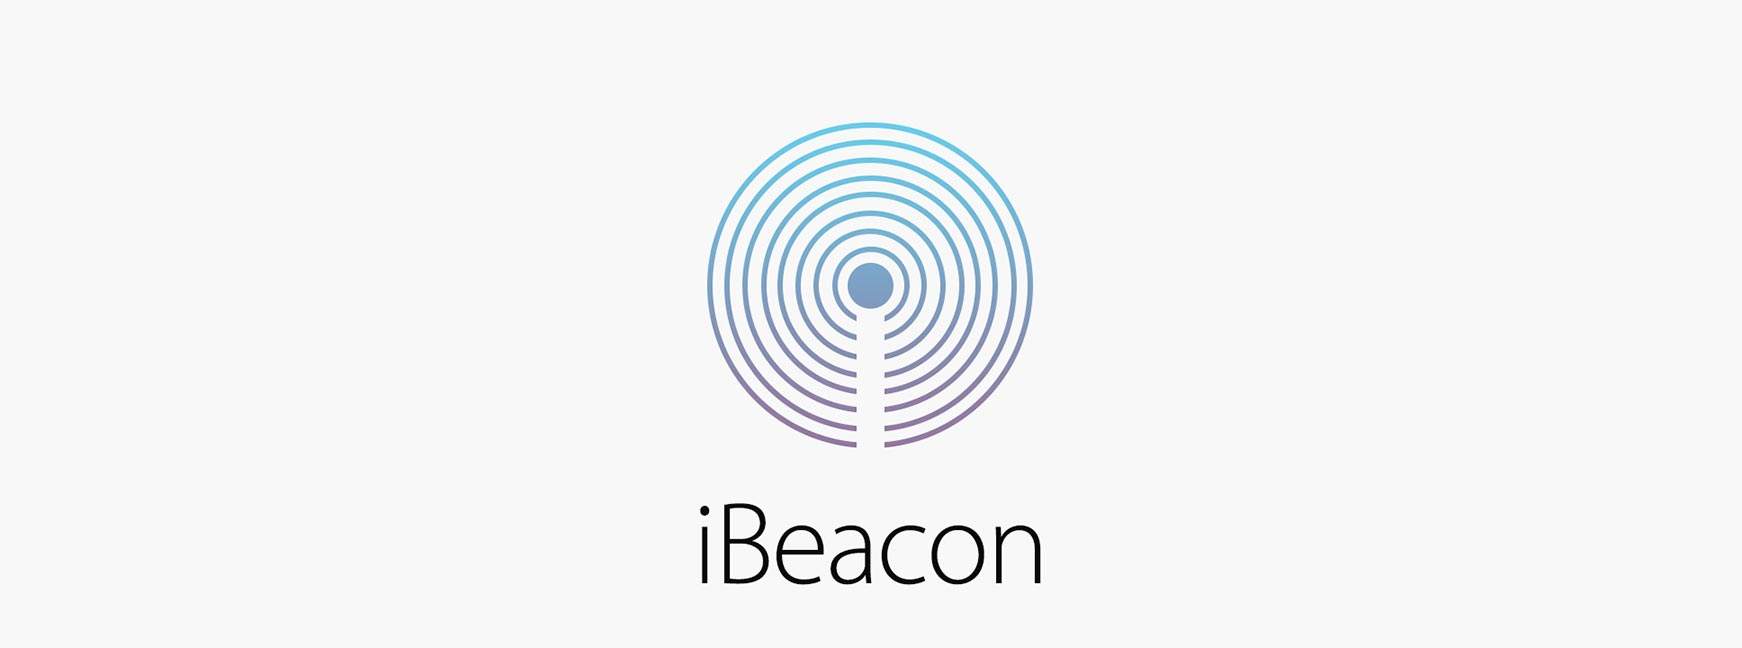 iBeacon を使用した Bluetooth ビーコンの開発ガイド